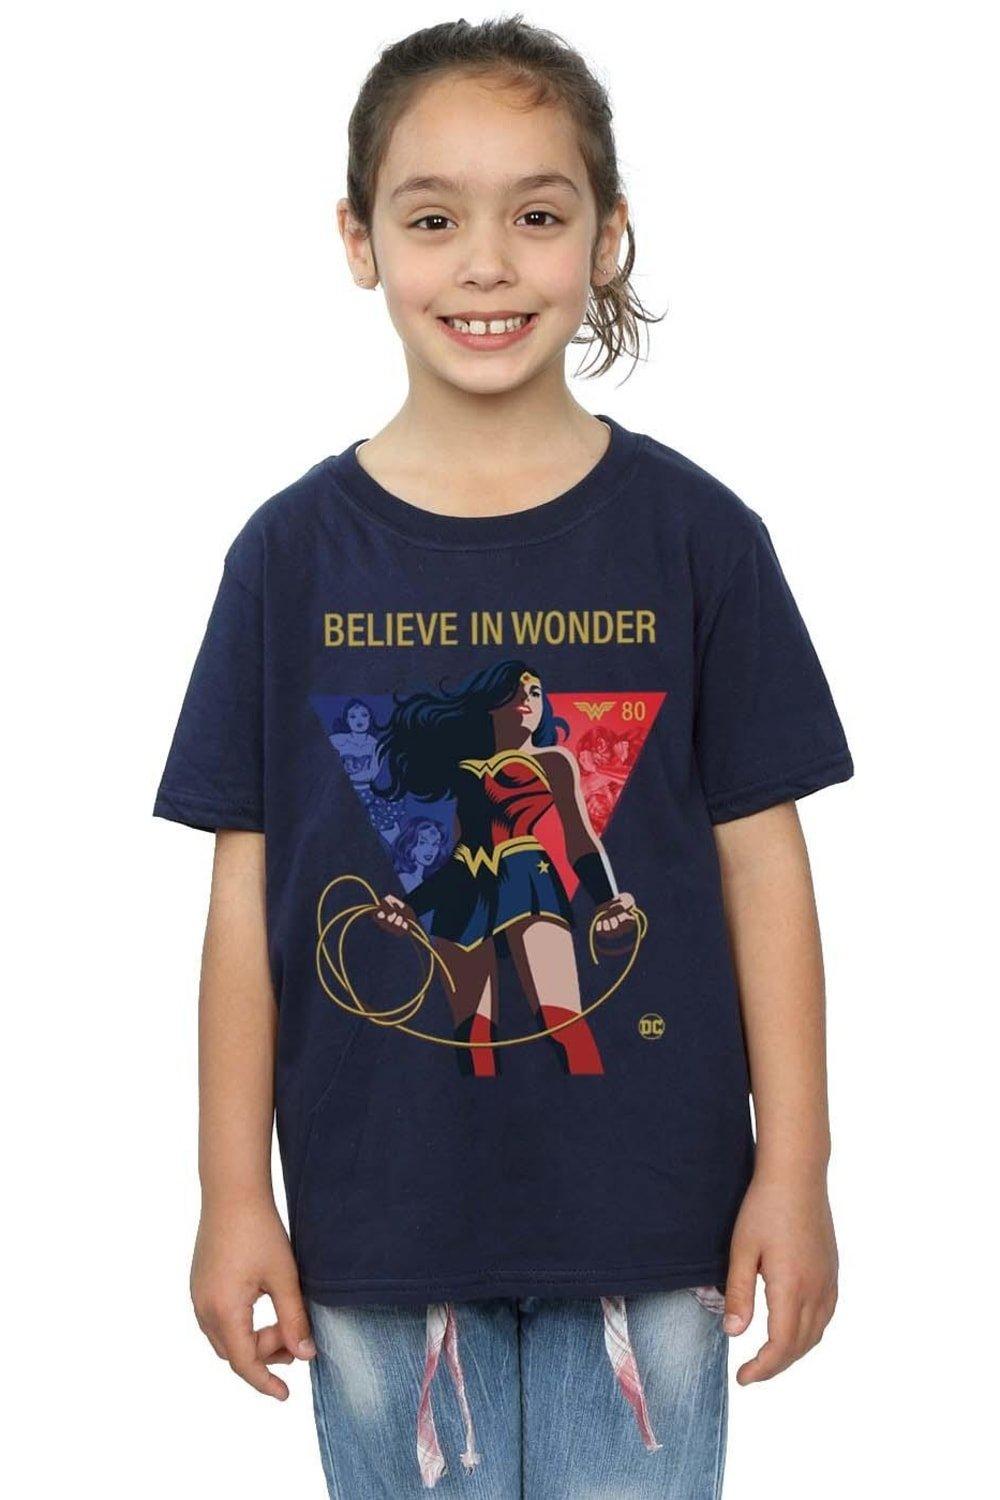 Wonder Woman 80th Anniversary Believe In Wonder Pose Cotton T-Shirt